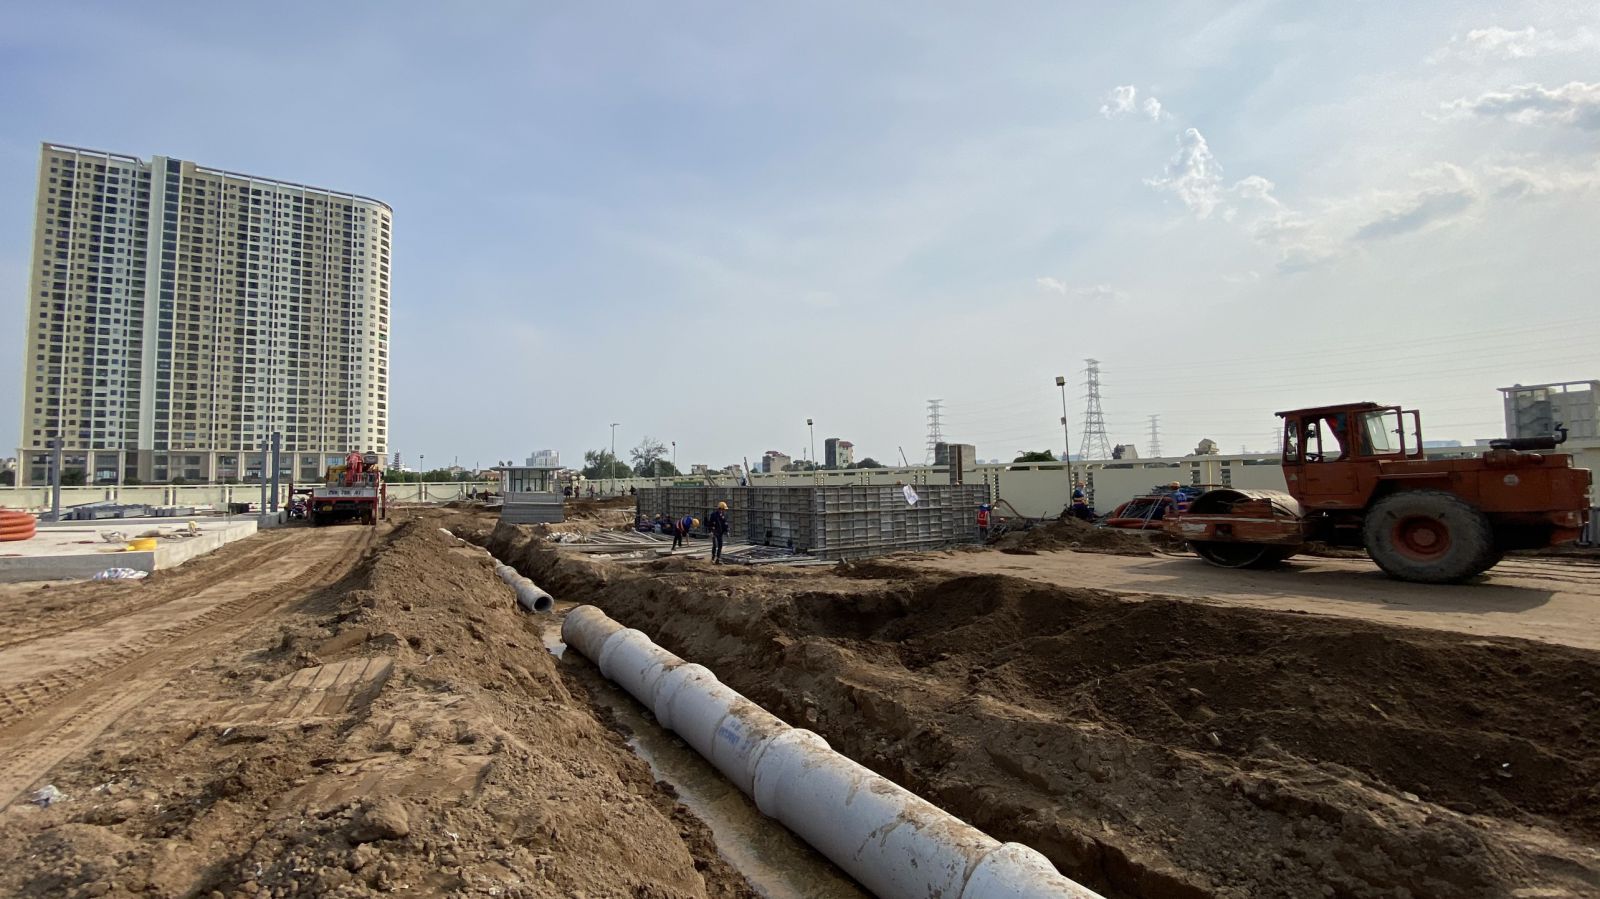  UBND thành phố đã chỉ đạo UBND quận Hoàng Mai đẩy nhanh tiến độ giải phóng mặt bằng dự án xây dựng hạ tầng kỹ thuật khu đất đấu giá xây dựng nhà ở tại phường Yên Sở để mở đường vào bệnh viện dã chiến.